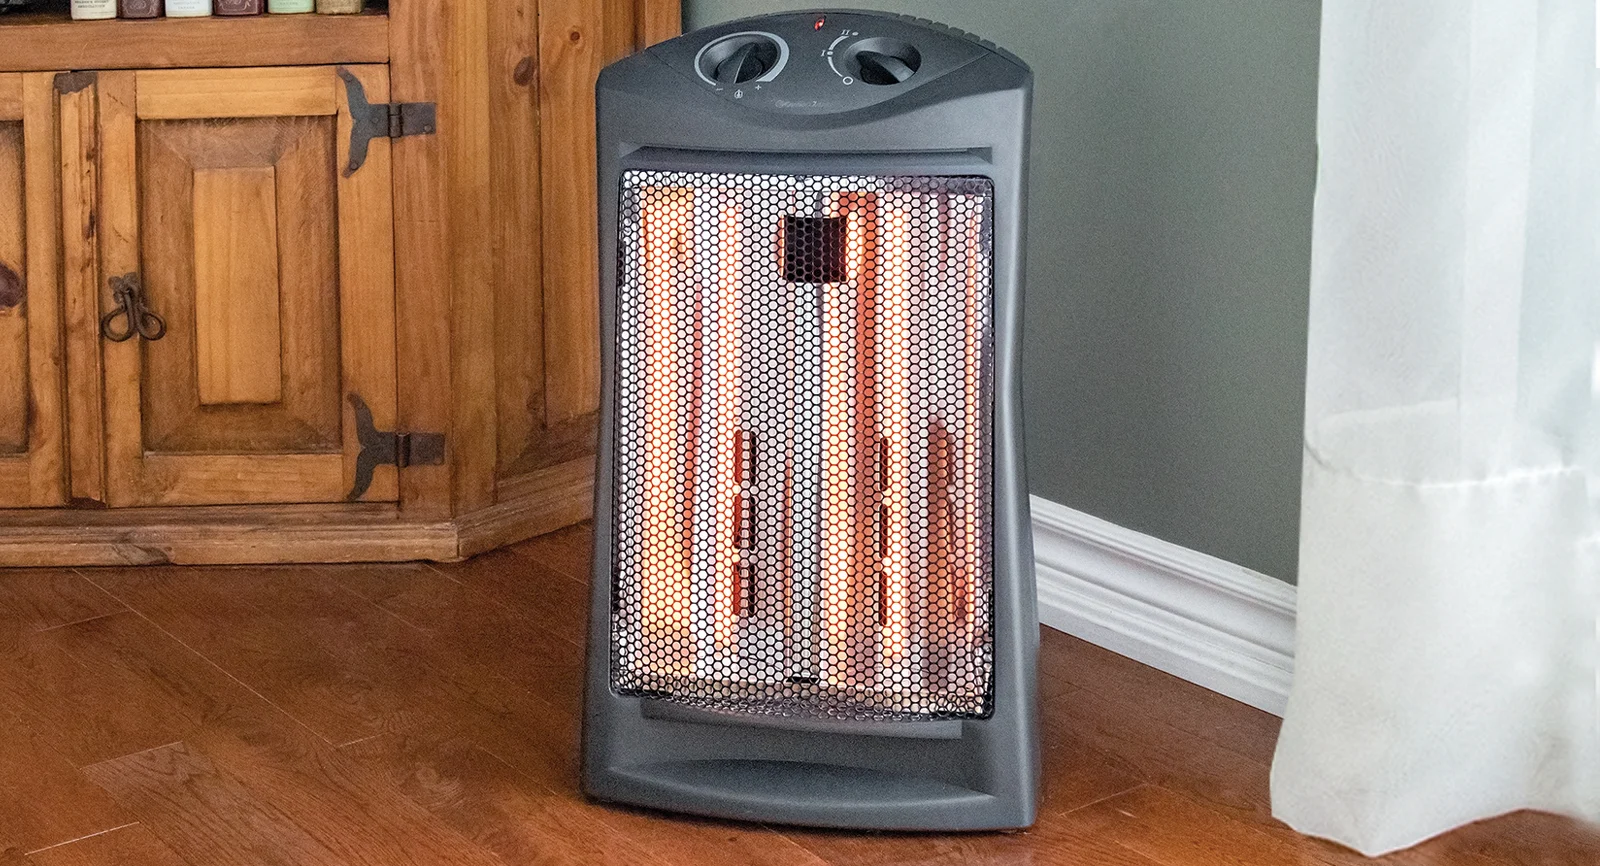 An infrared heater